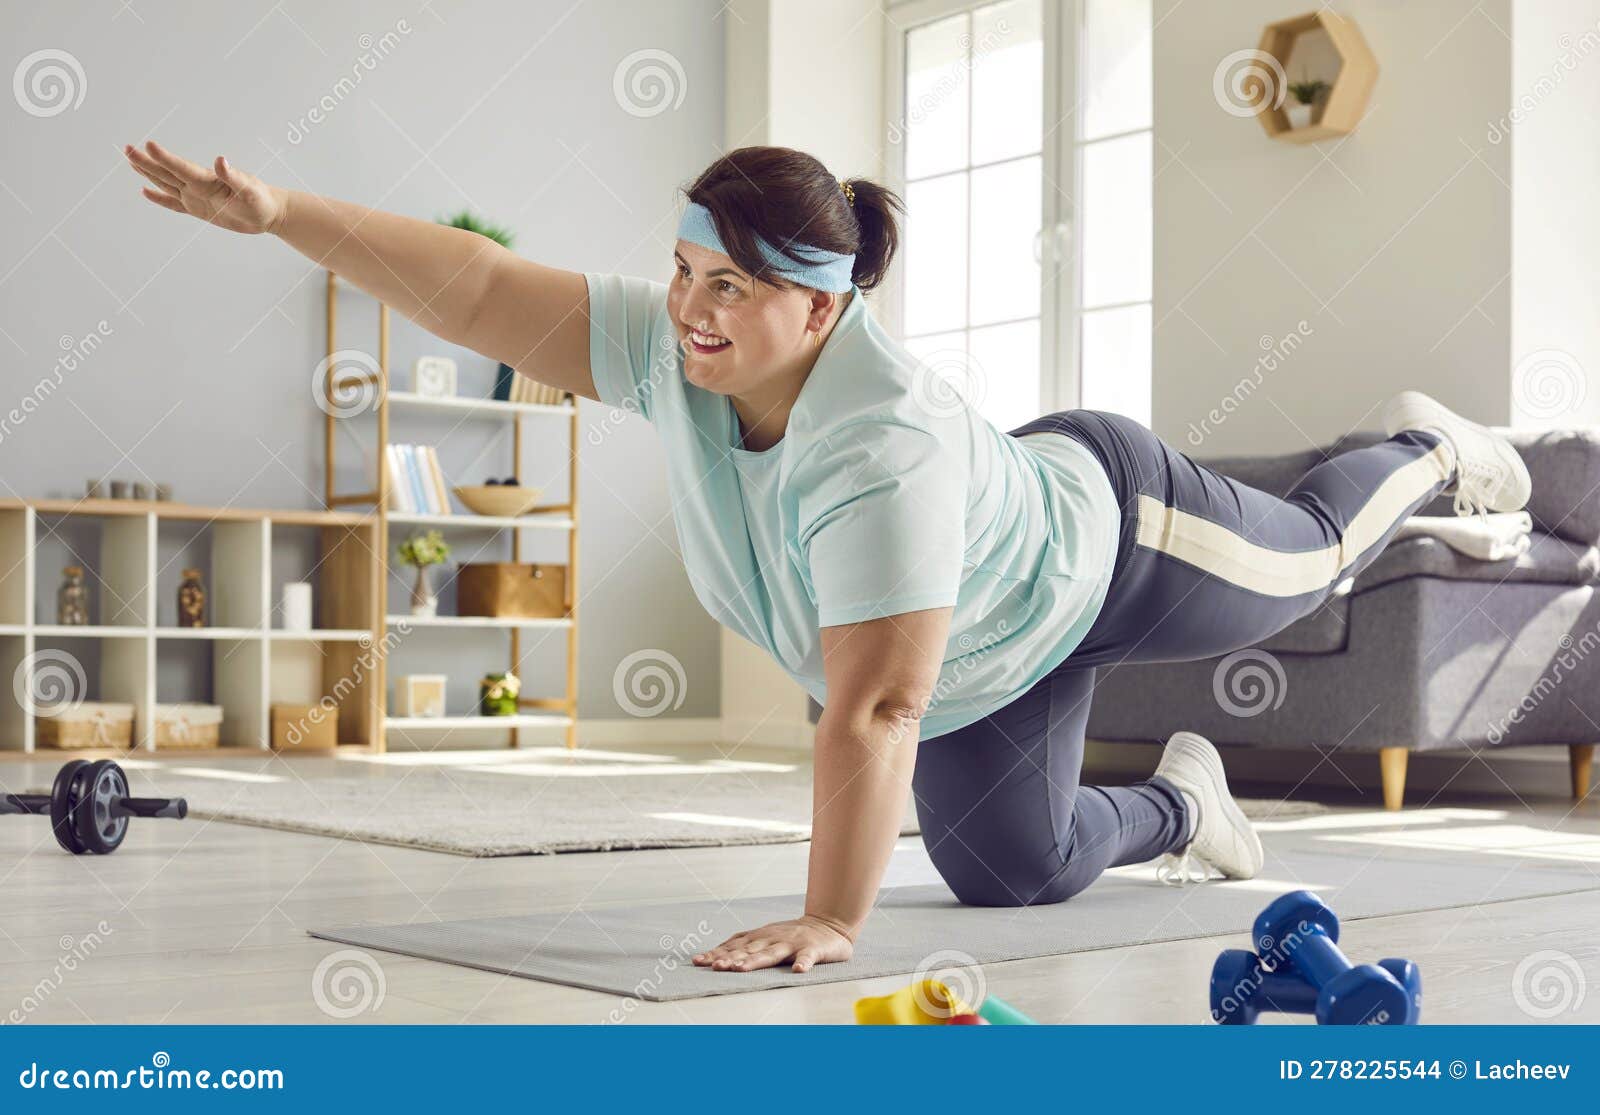 en el piso. mujer con ropa deportiva haciendo yoga en el interior